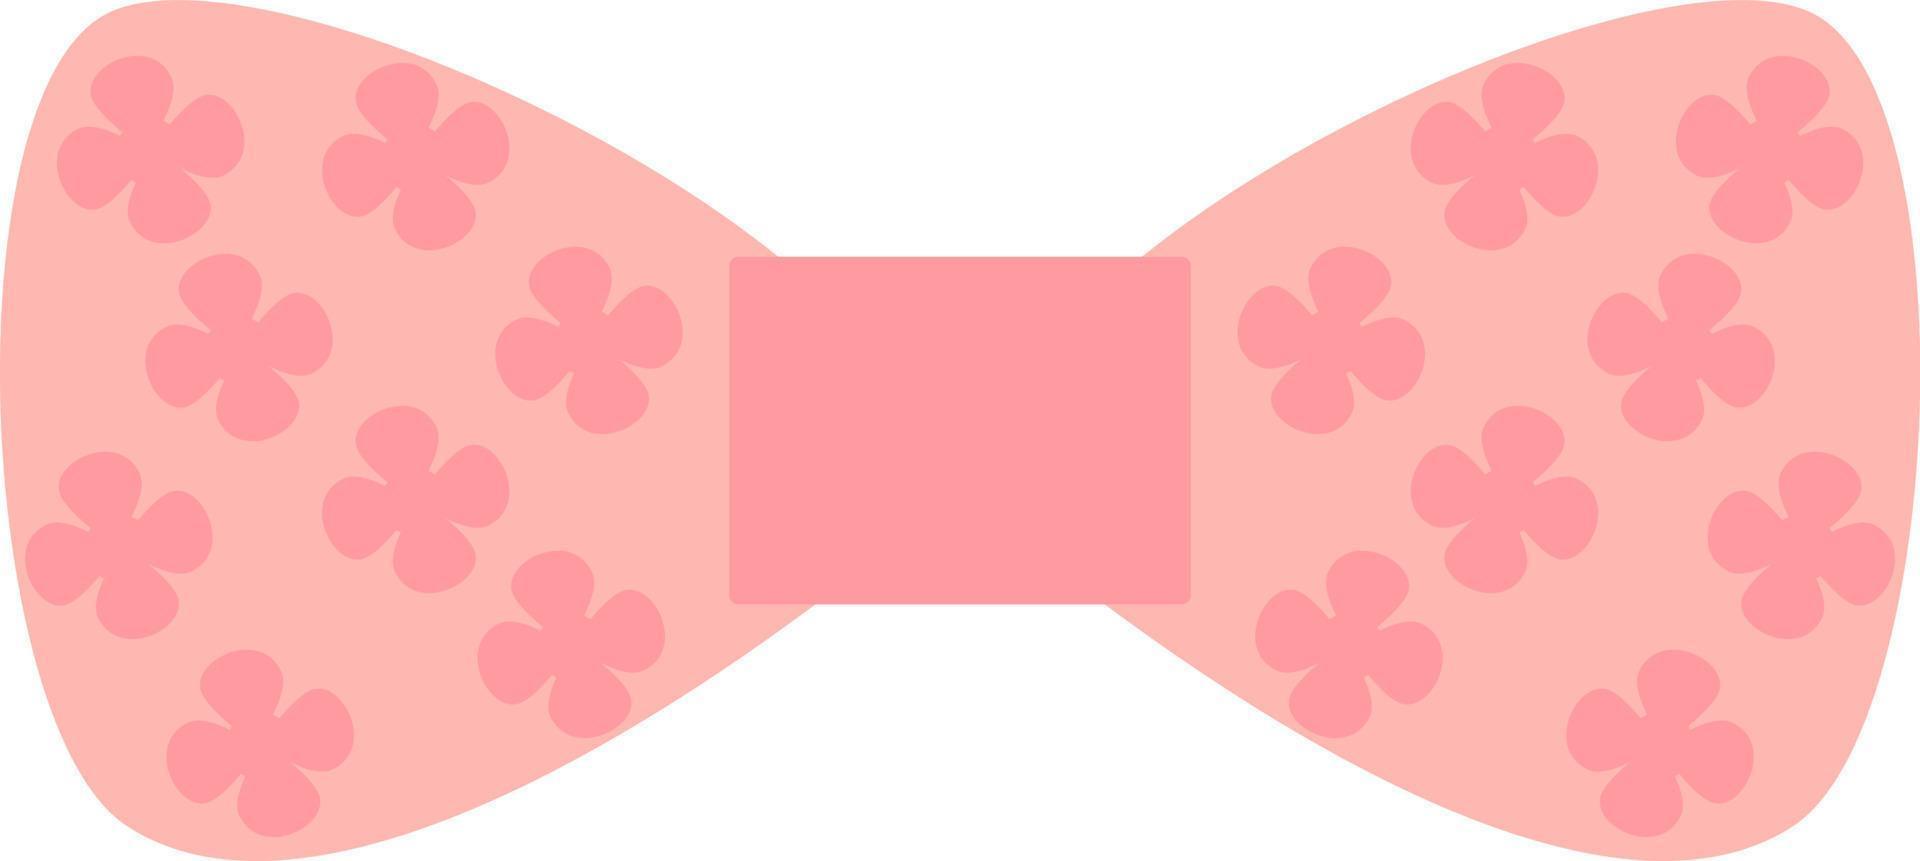 lazo rosa con hojas de la suerte, ilustración, vector, sobre un fondo blanco. vector